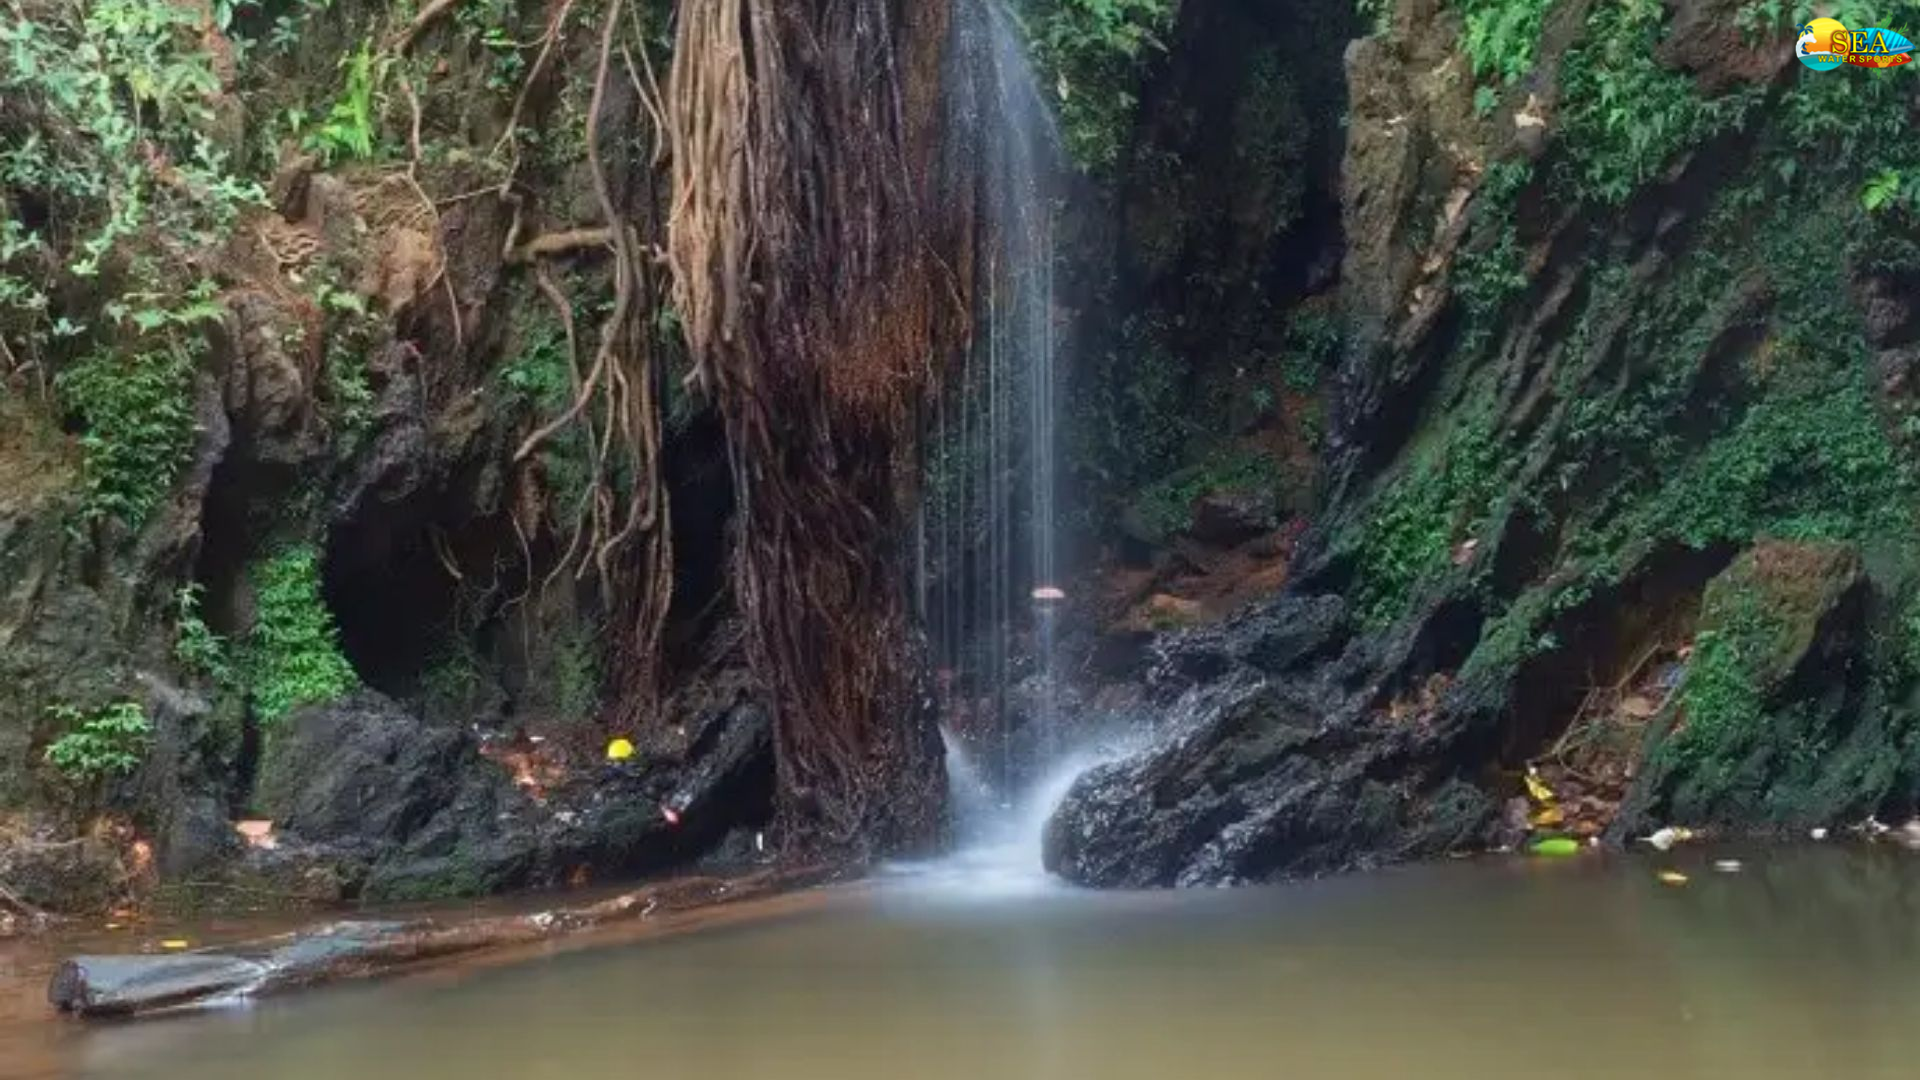 Apsara Konda Falls